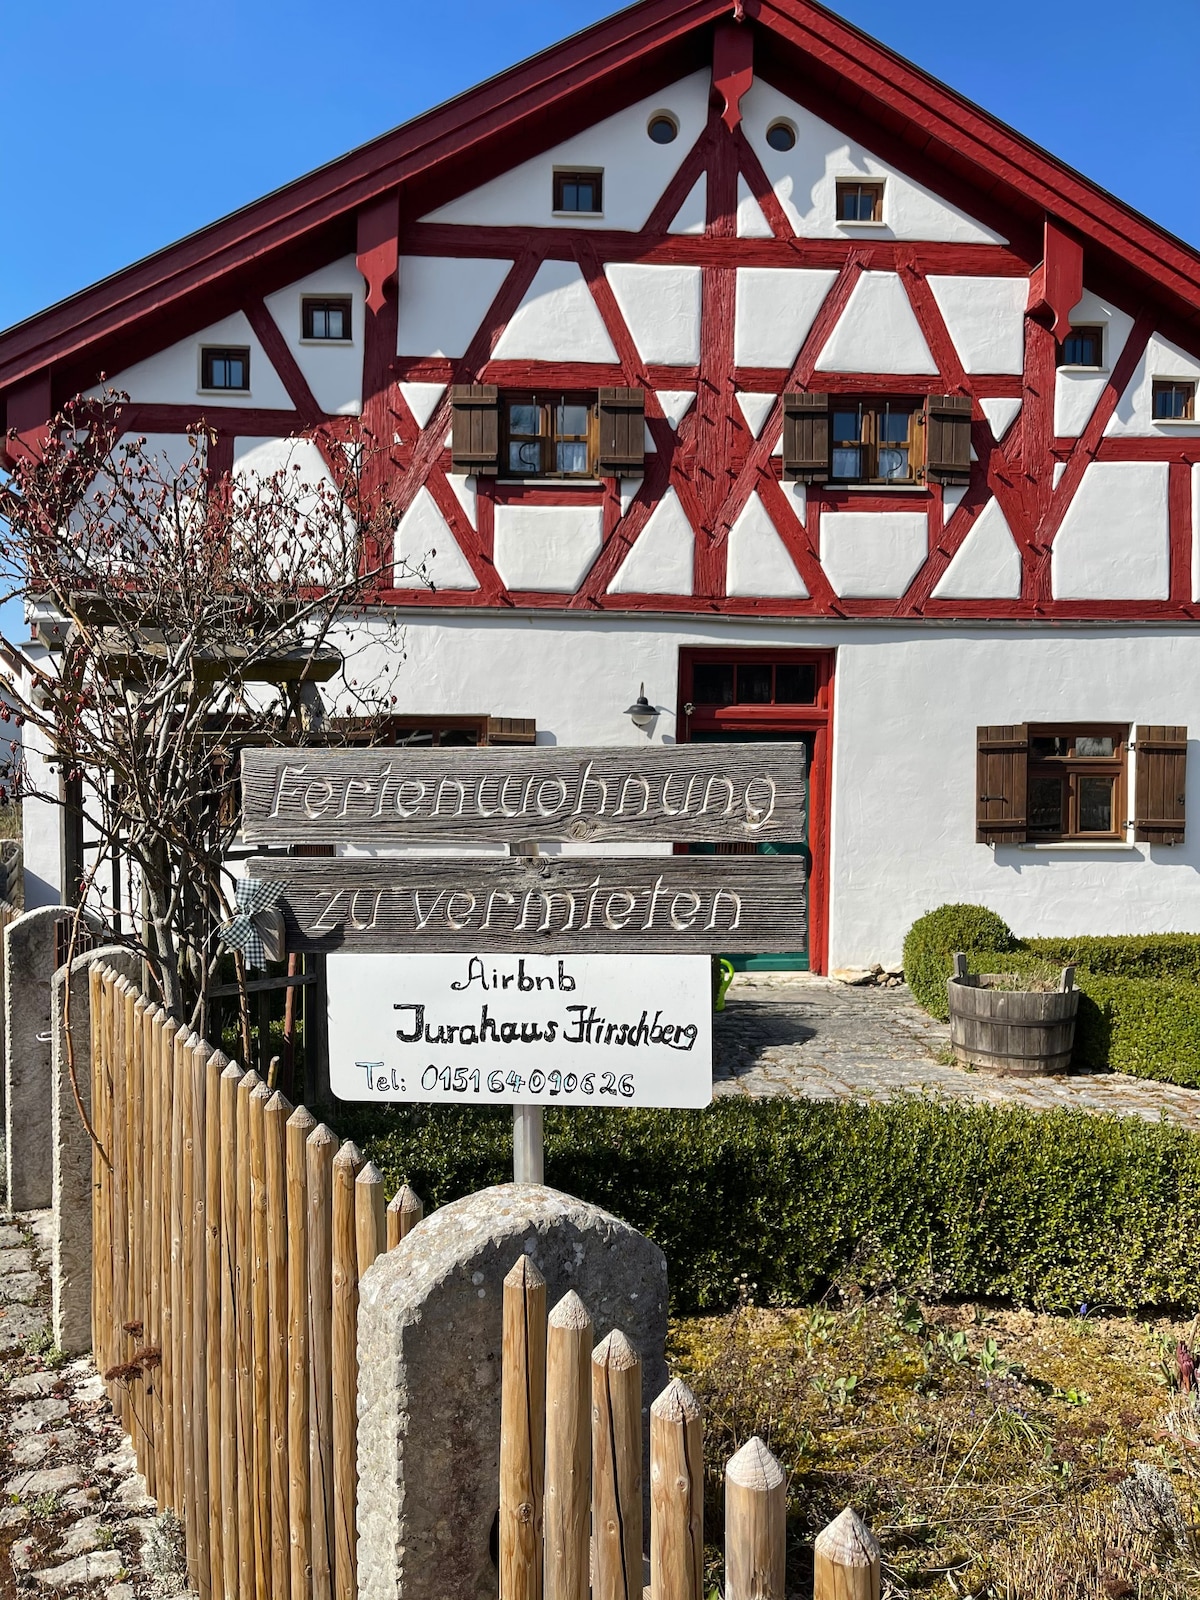 Jaurahaus Hirschberg一楼公寓